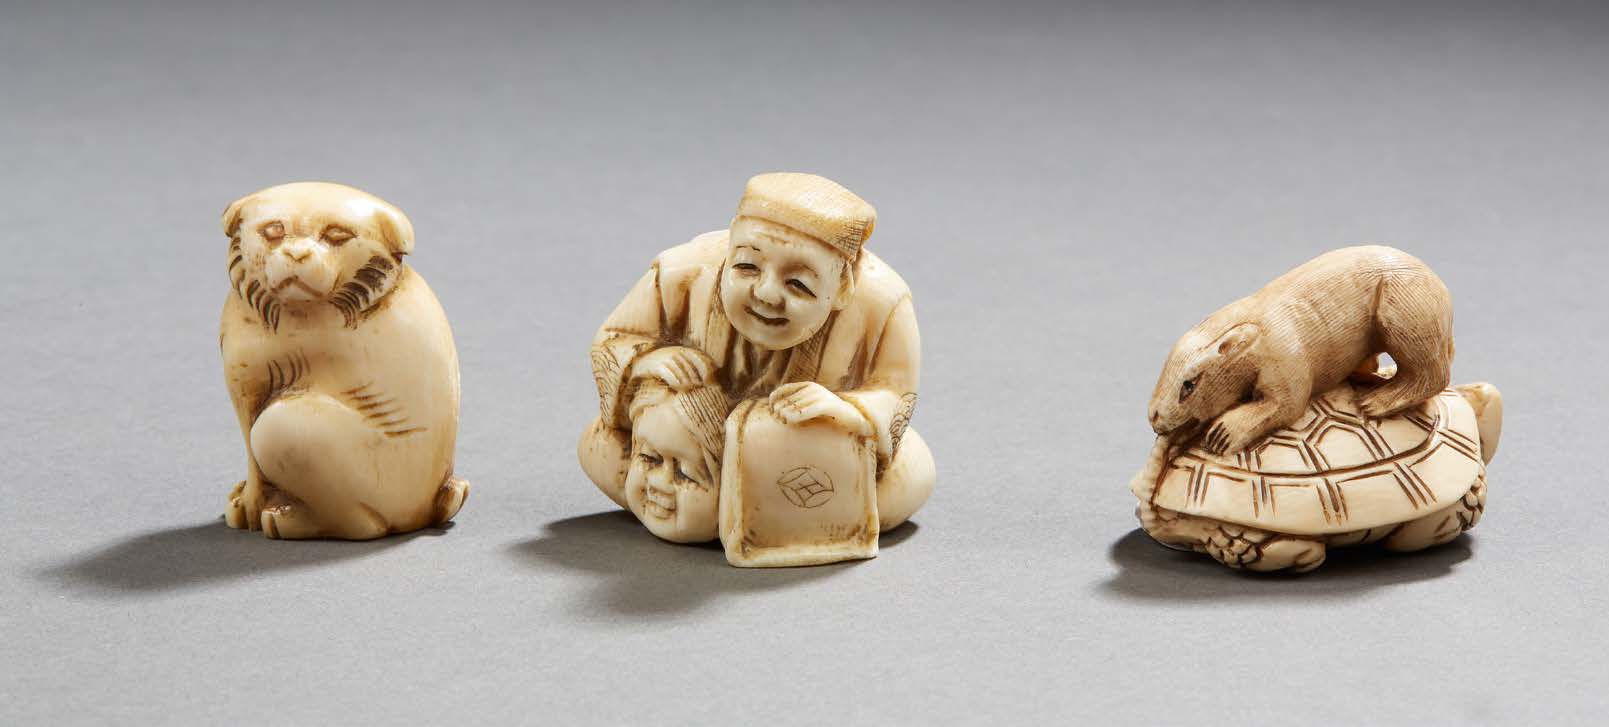 JAPON Tres Netsuke de marfil tallado, uno representando un perro sentado, otro u&hellip;